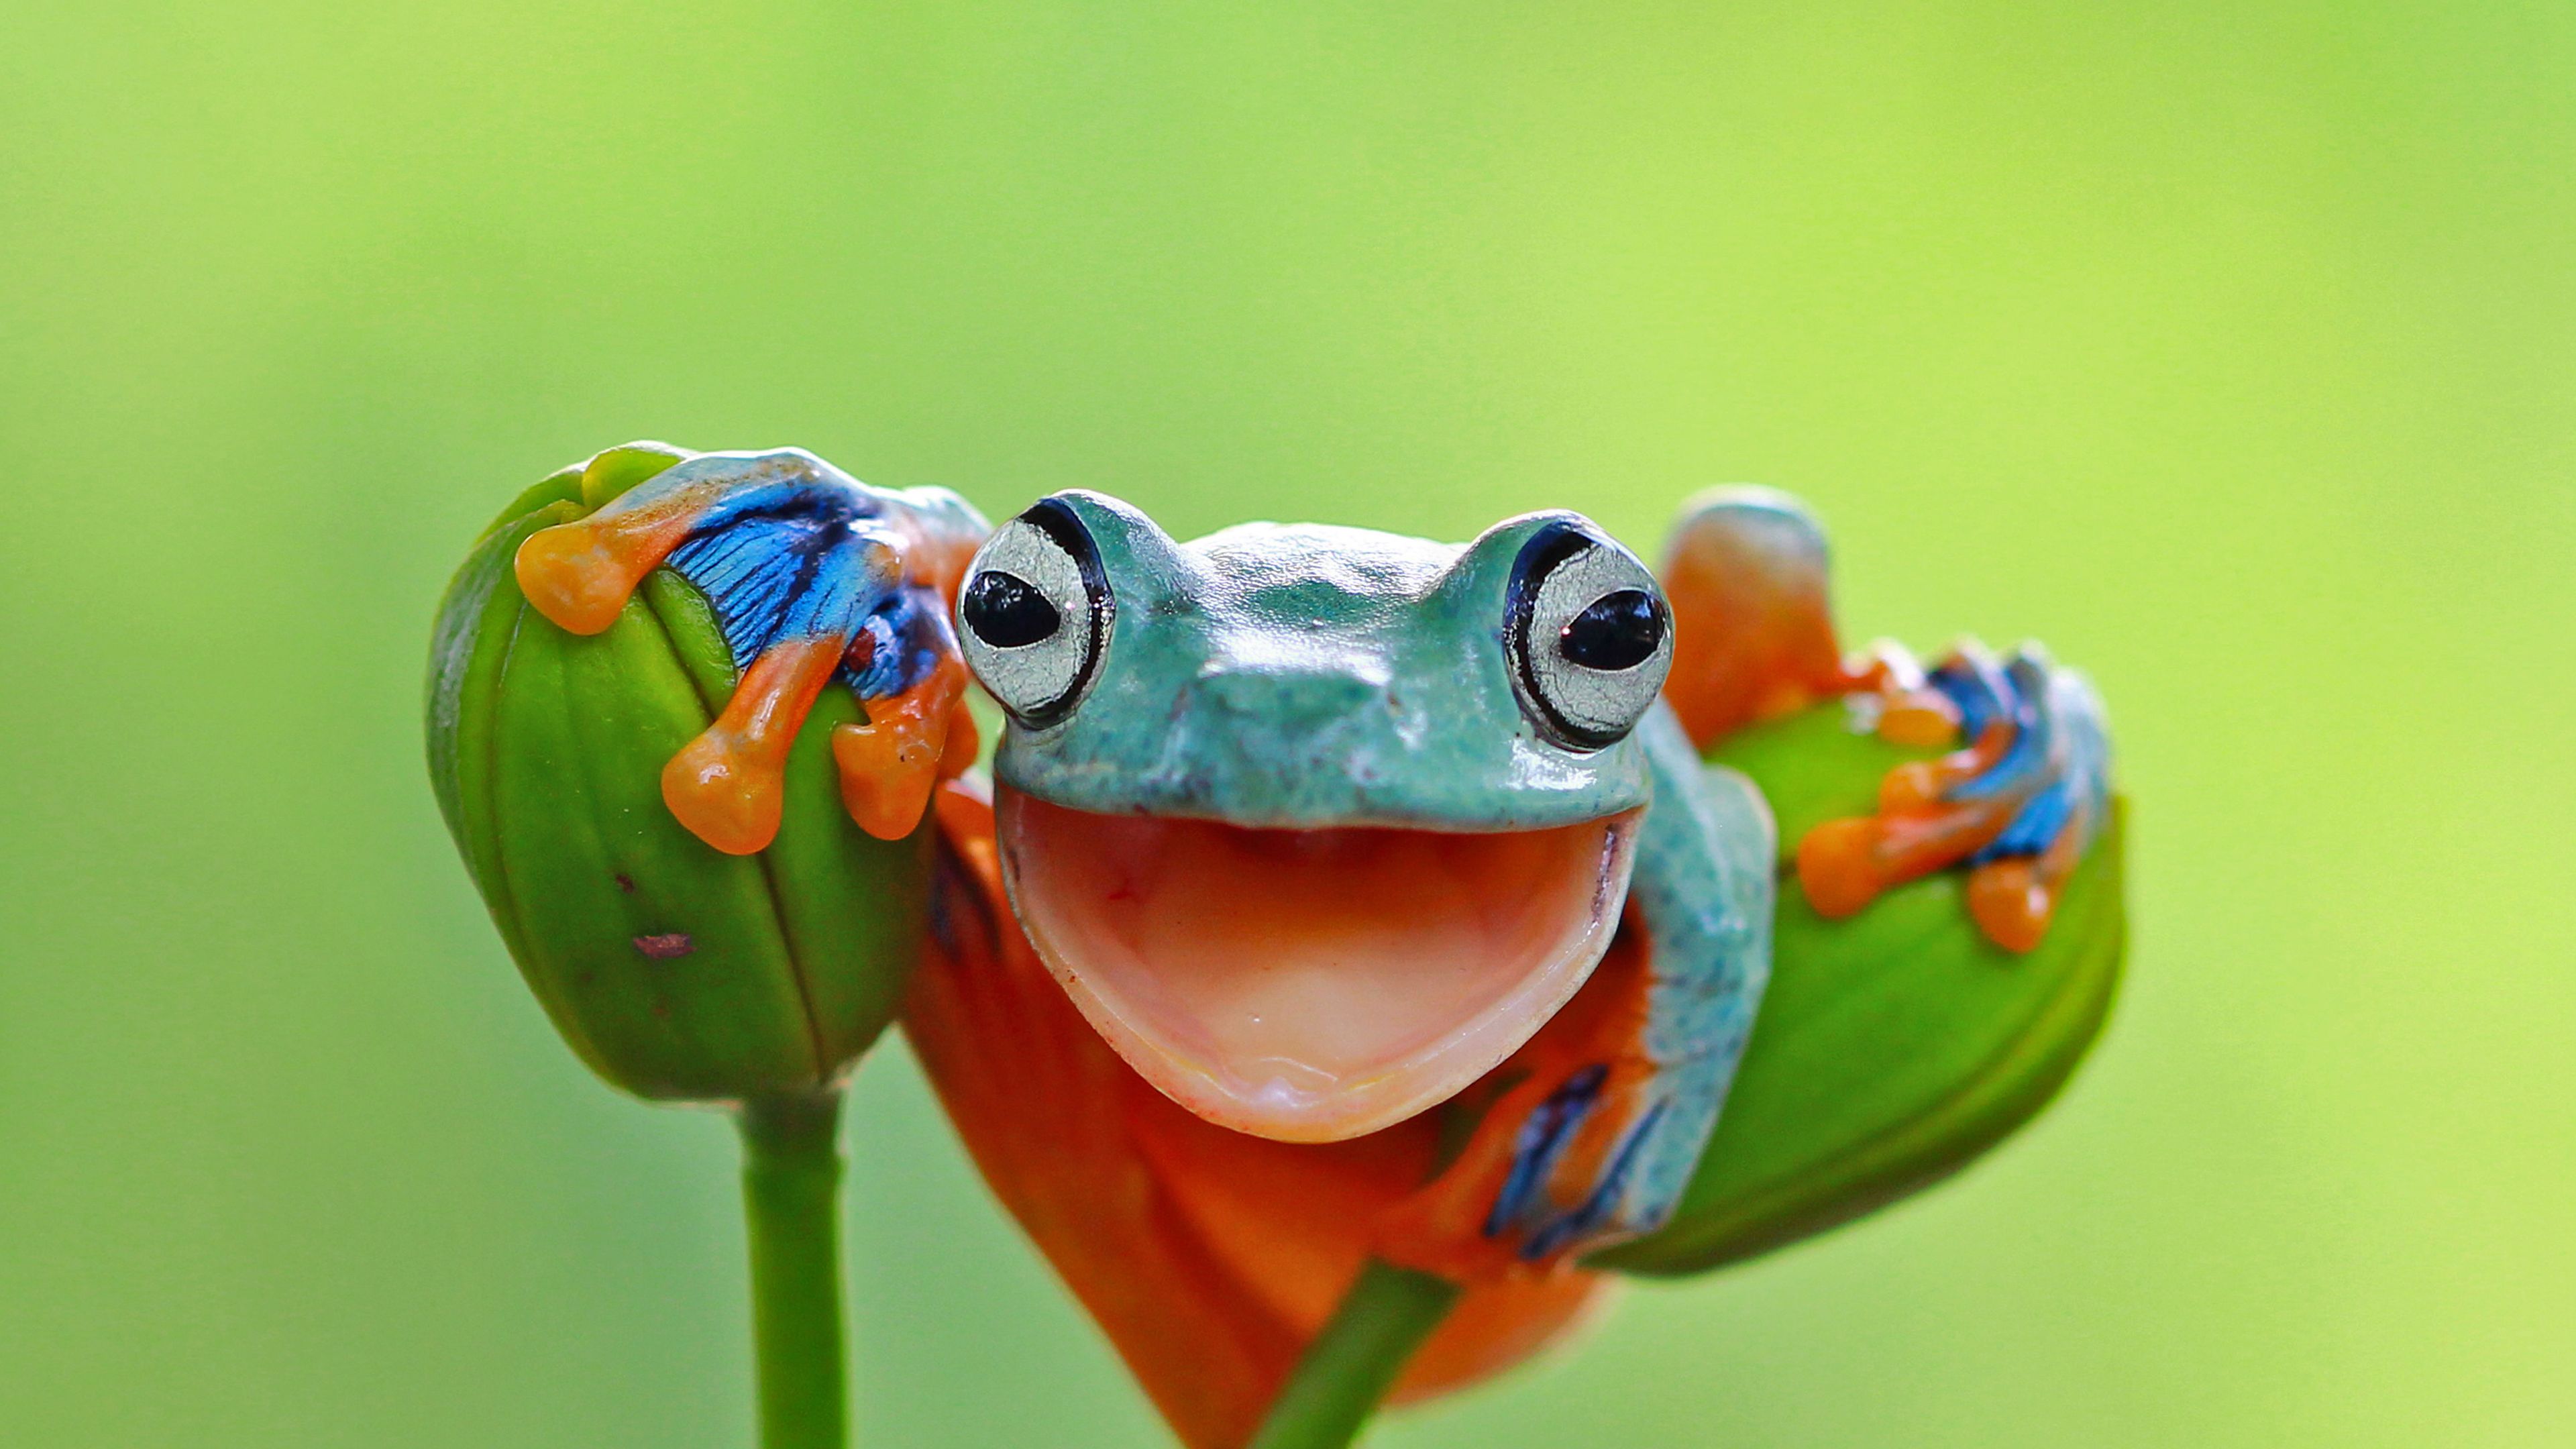 Javan tree frog, Indonesia - Bing Gallery